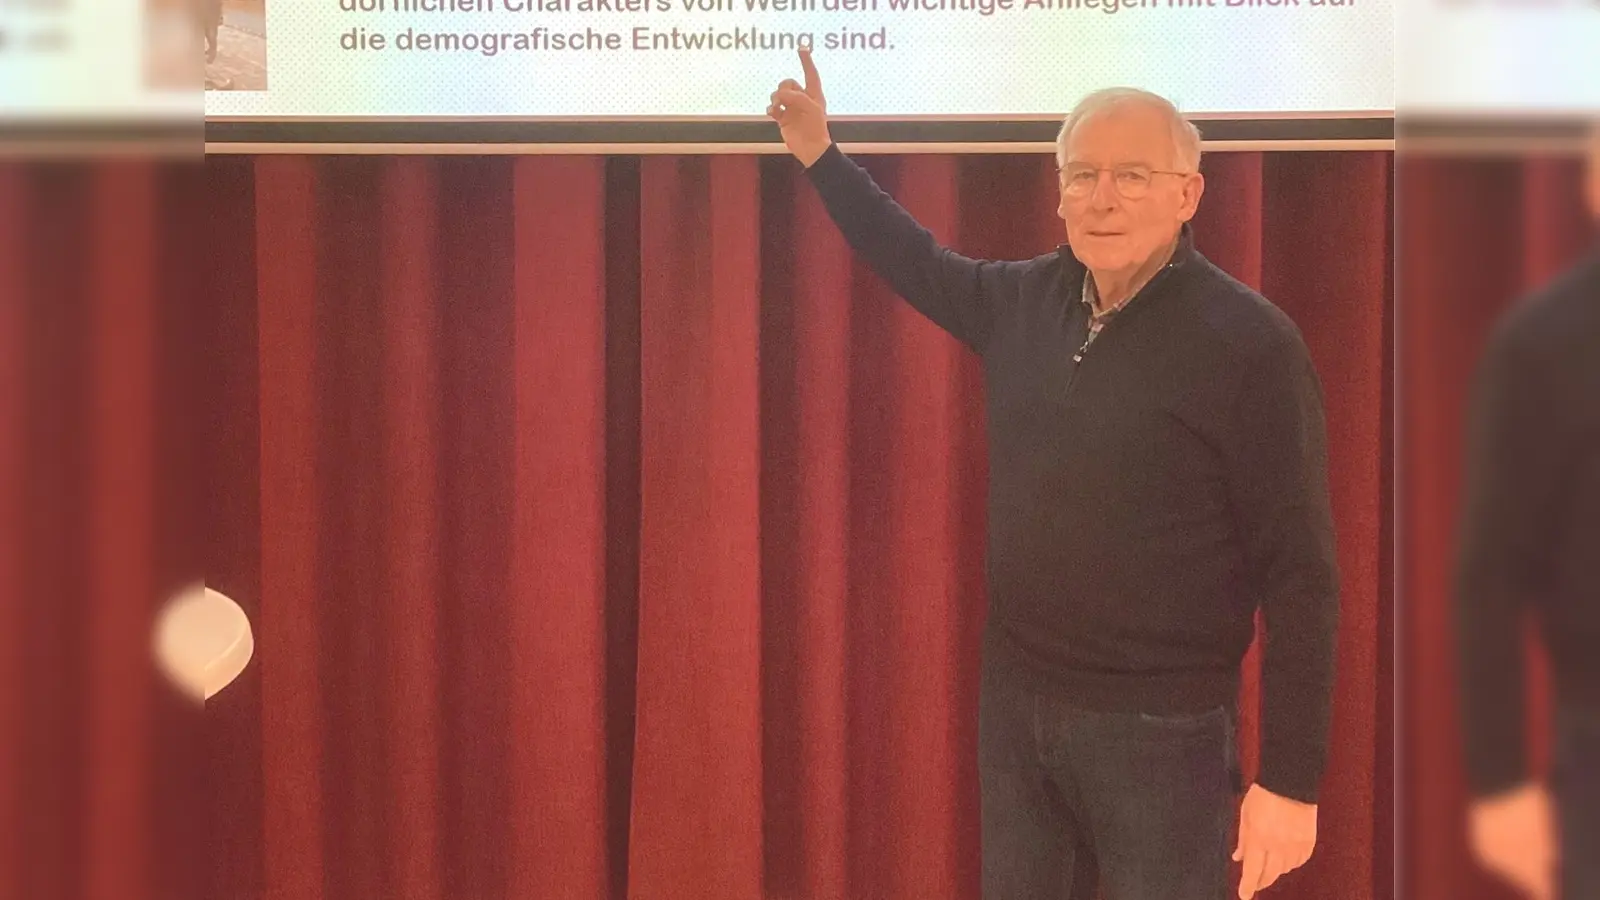 Der Vorsitzende Gerd Rother erläuterte die Umstrukturierung. (Foto: proWehrden)